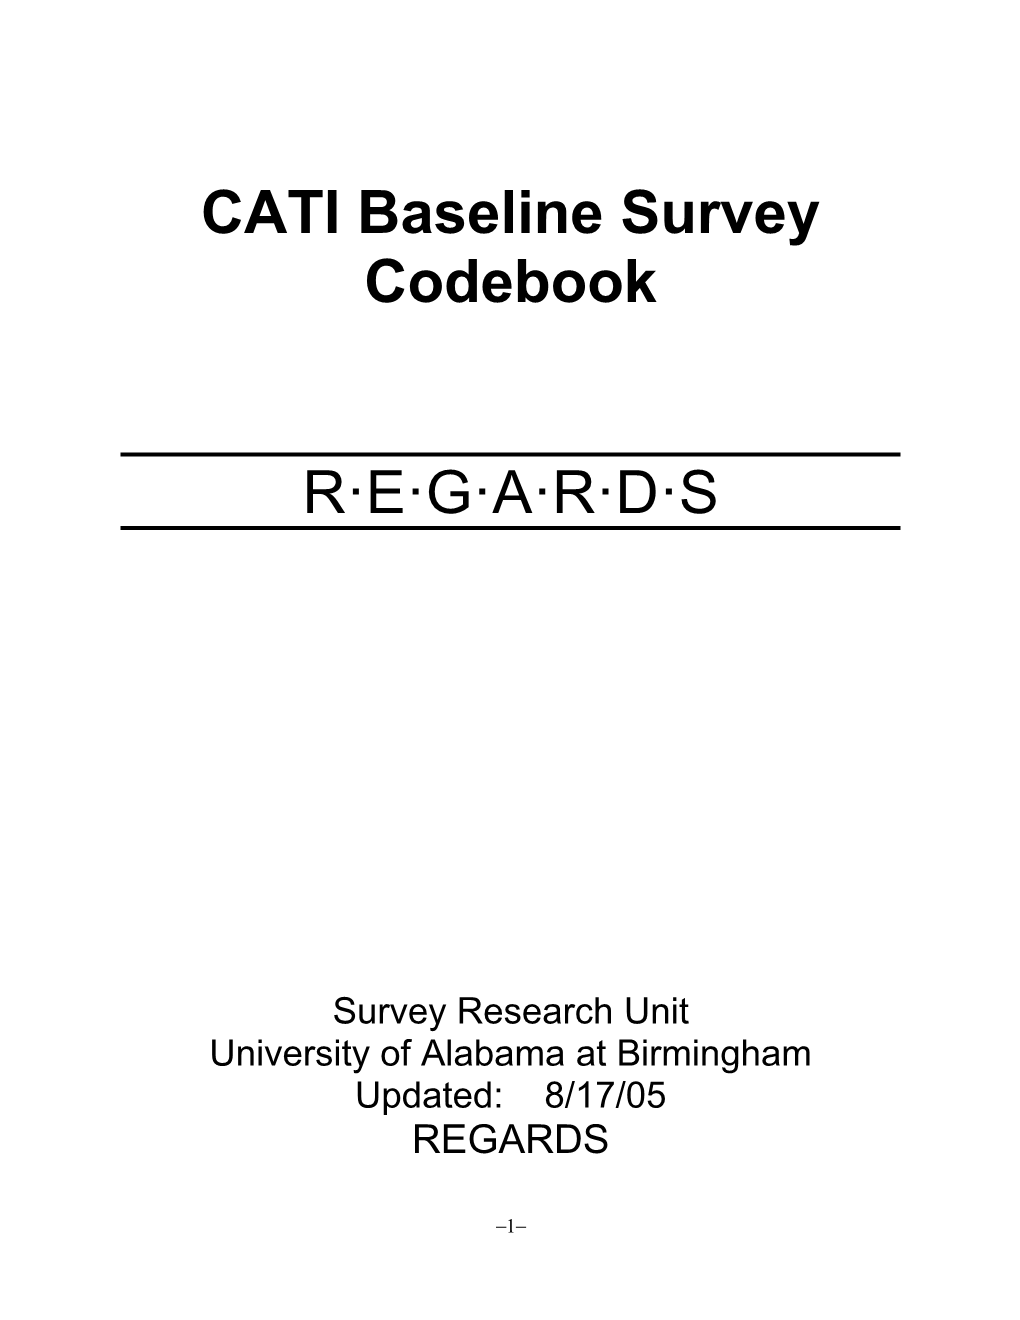 CATI Baseline Survey Codebook